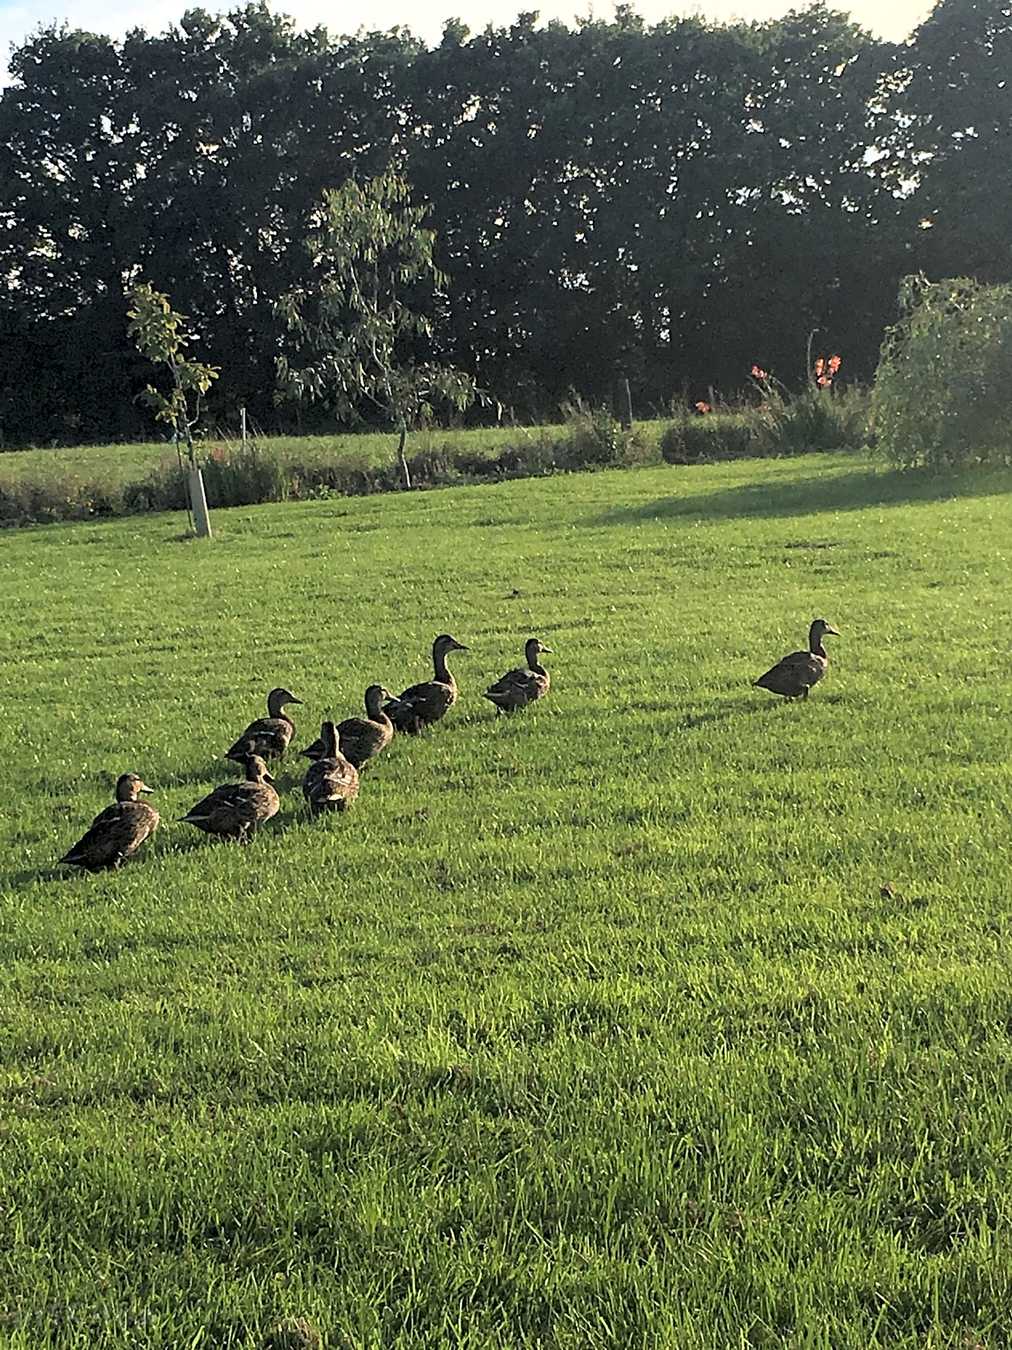 Ducks arriving for feeding